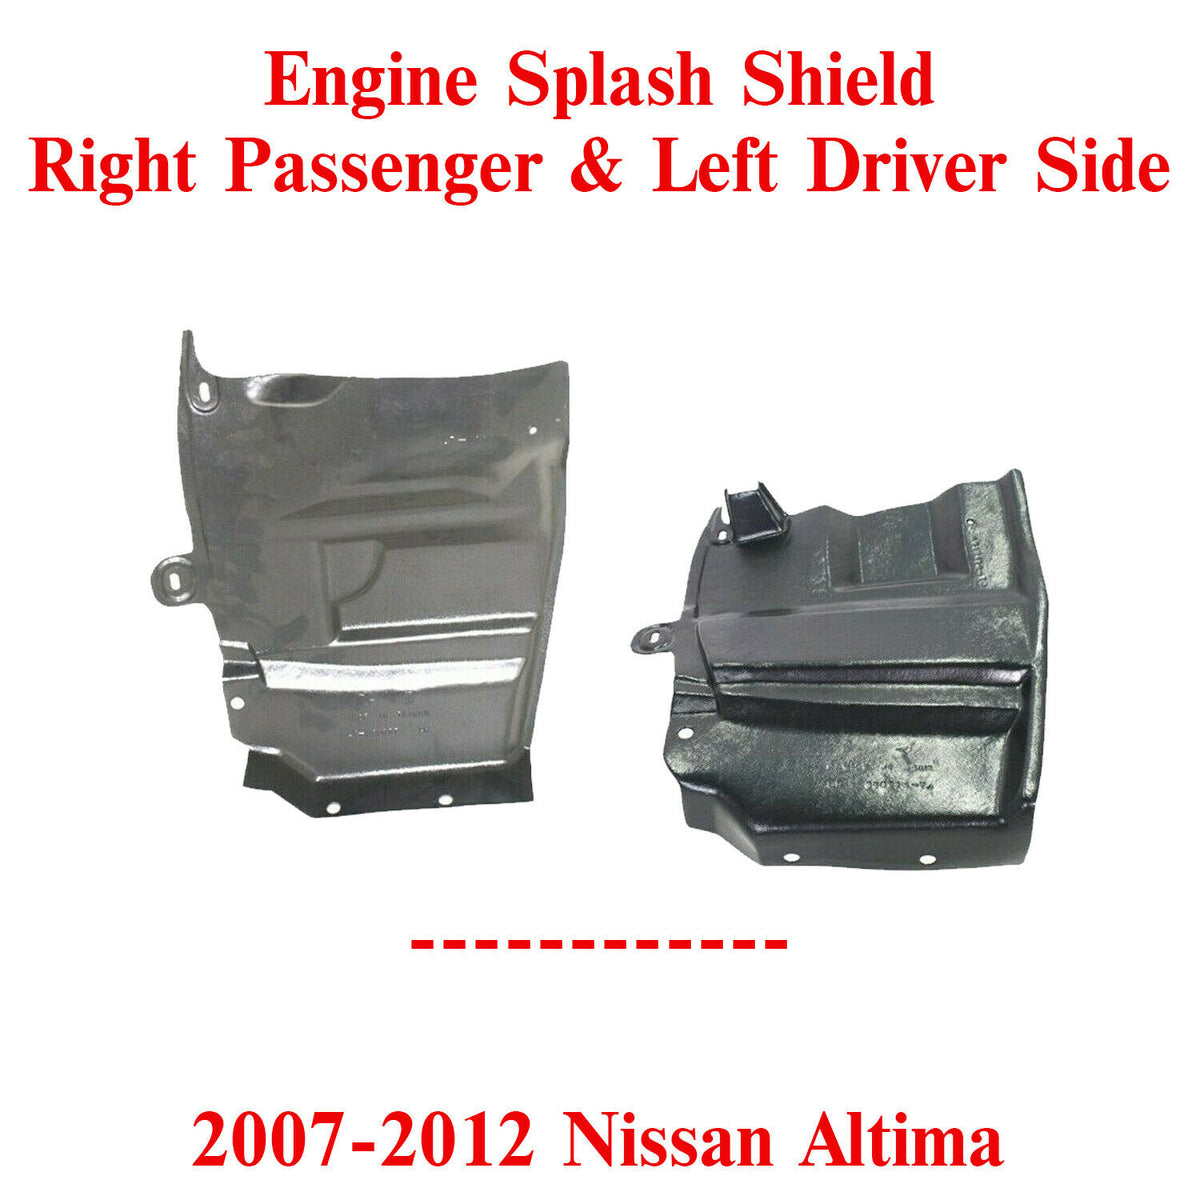 Engine Splash Shield Under Cover Passenger u0026 Driver Side For 07-12 Nissan  Altima